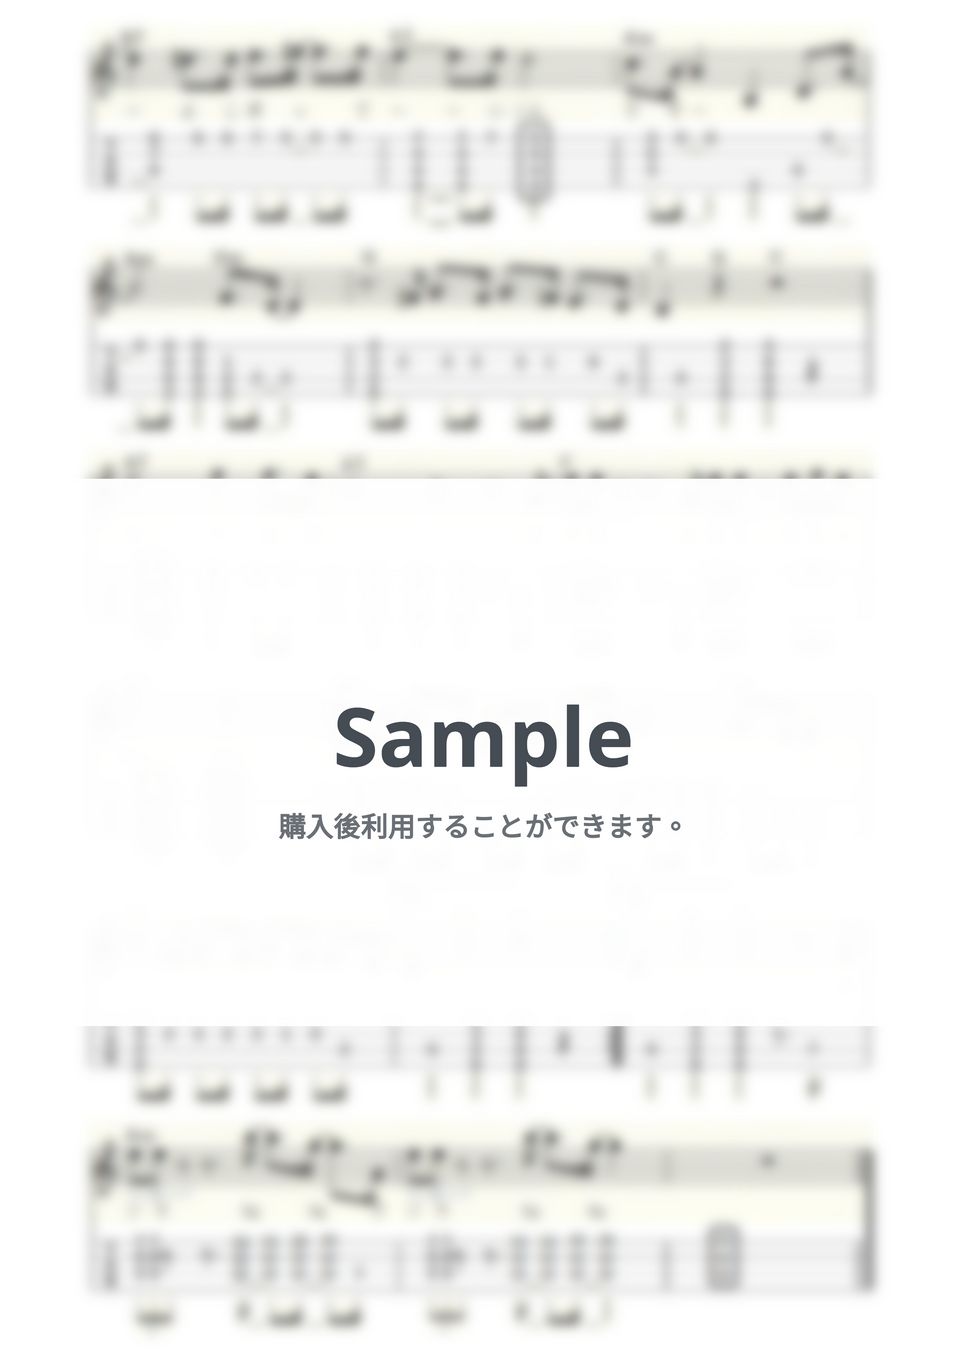 大瀧詠一 - 空飛ぶくじら (ｳｸﾚﾚｿﾛ/Low-G/中級) by ukulelepapa